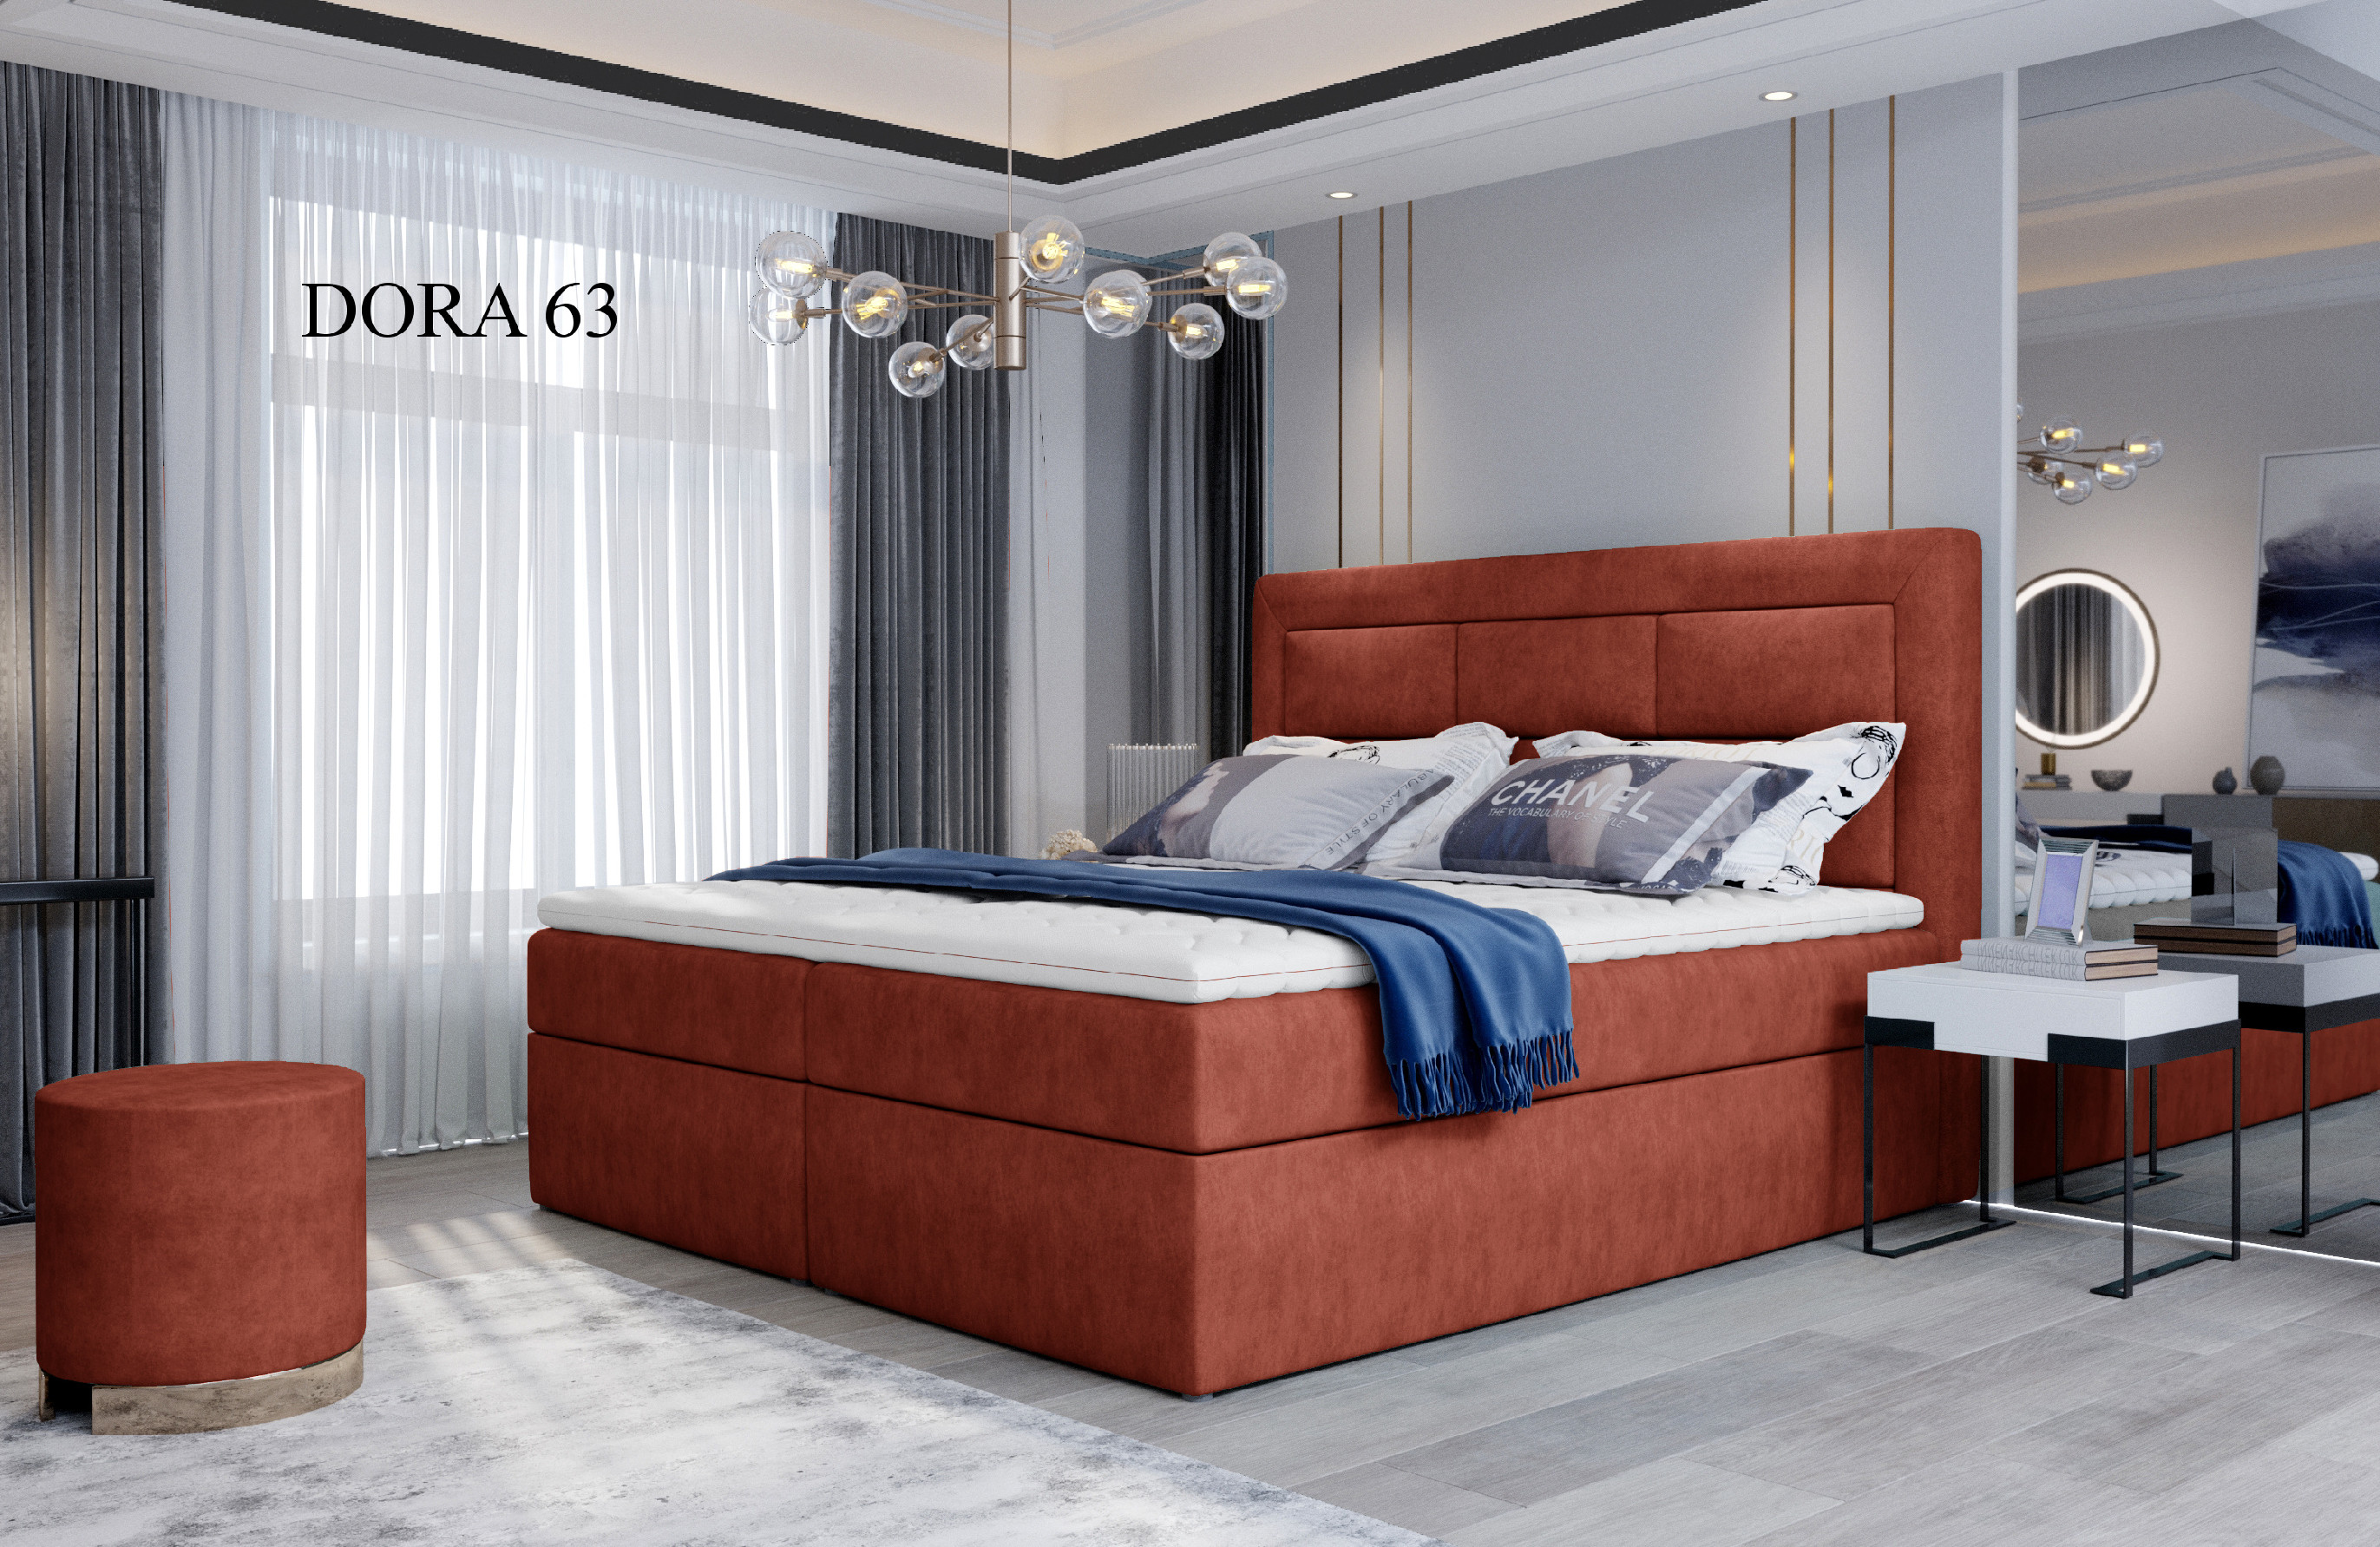 Čalouněná postel VIVRE Boxsprings 160 x 200 cm Provedení: Dora 63